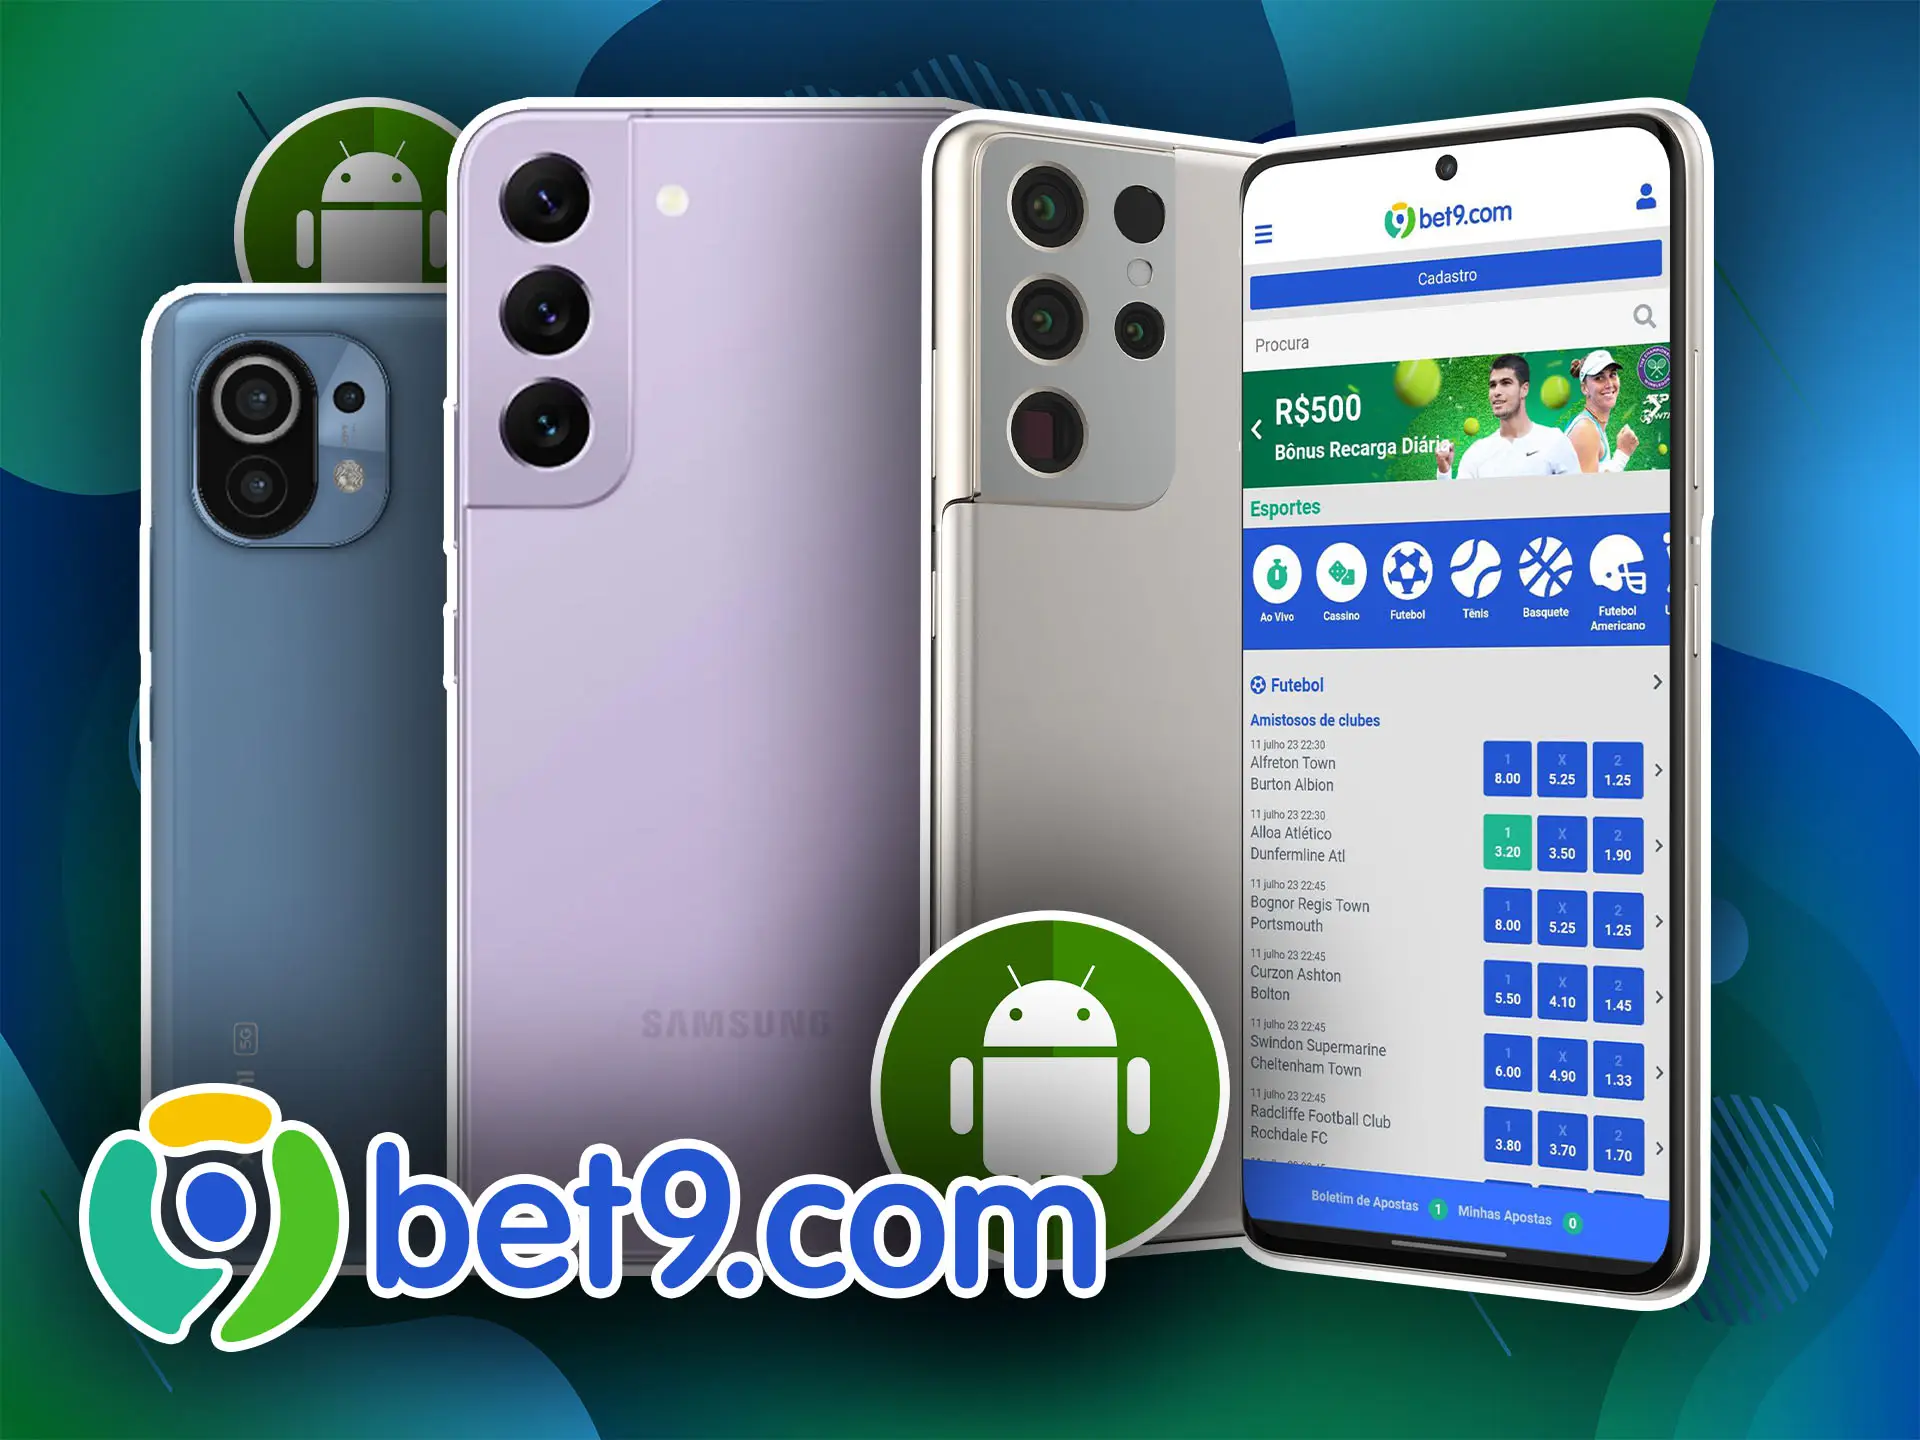 Aqui está uma lista de smartphones modernos nos quais você pode instalar facilmente o aplicativo Bet9.